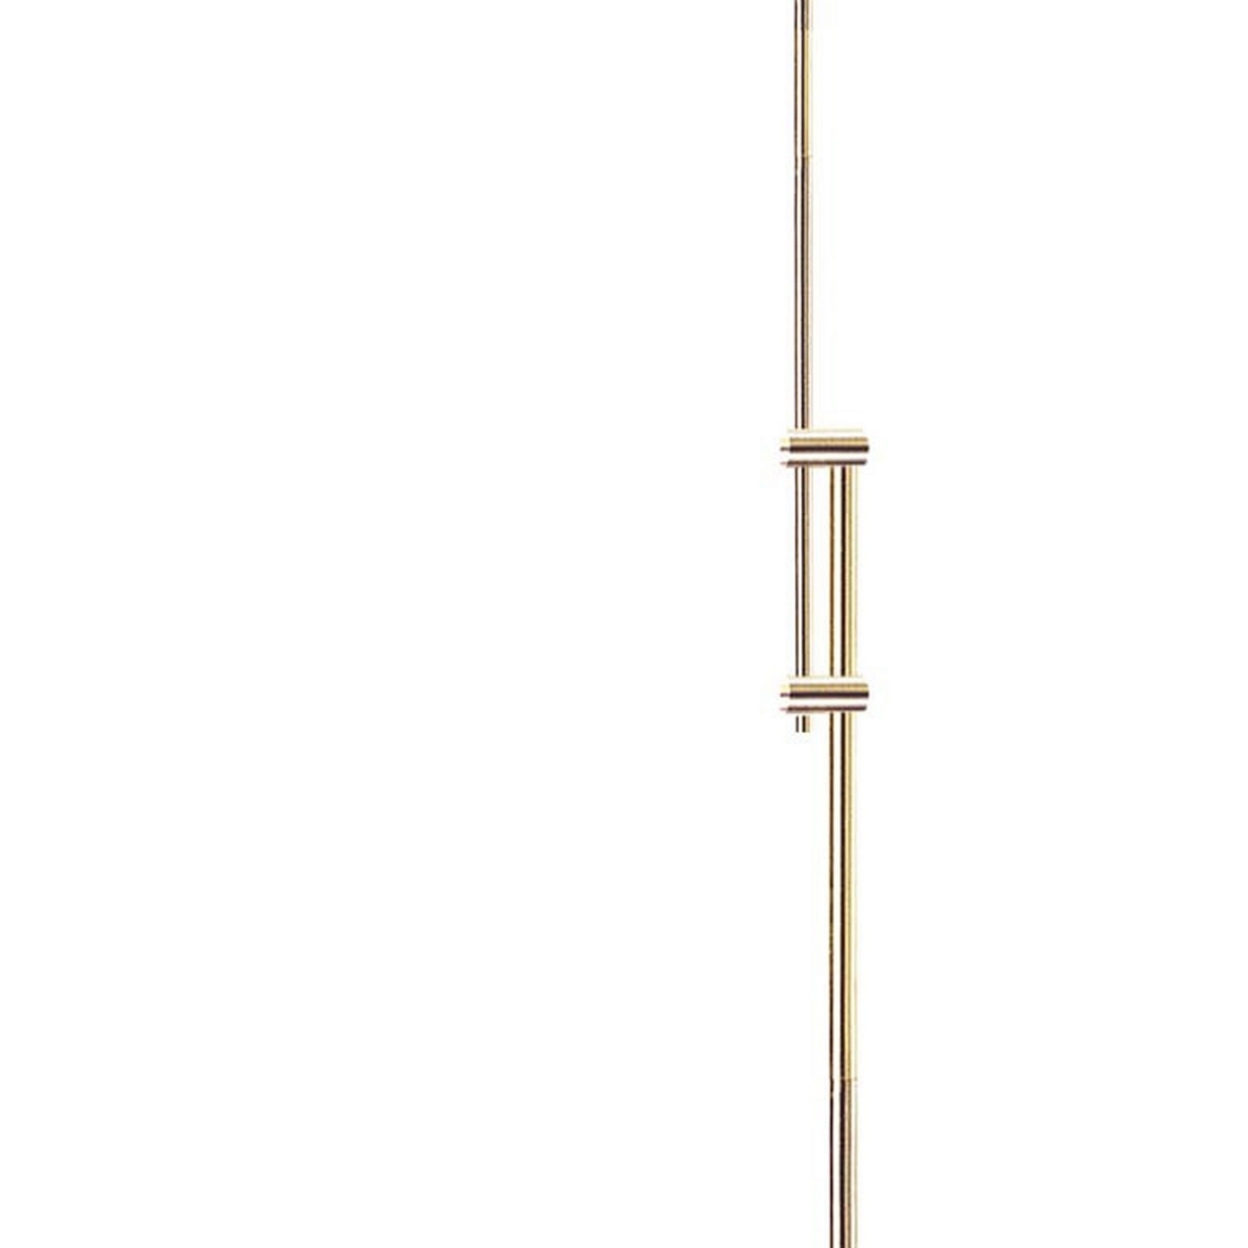 3 Way Metal Floor Lamp With And Adjustable Height Mechanism, Gold- Saltoro Sherpi